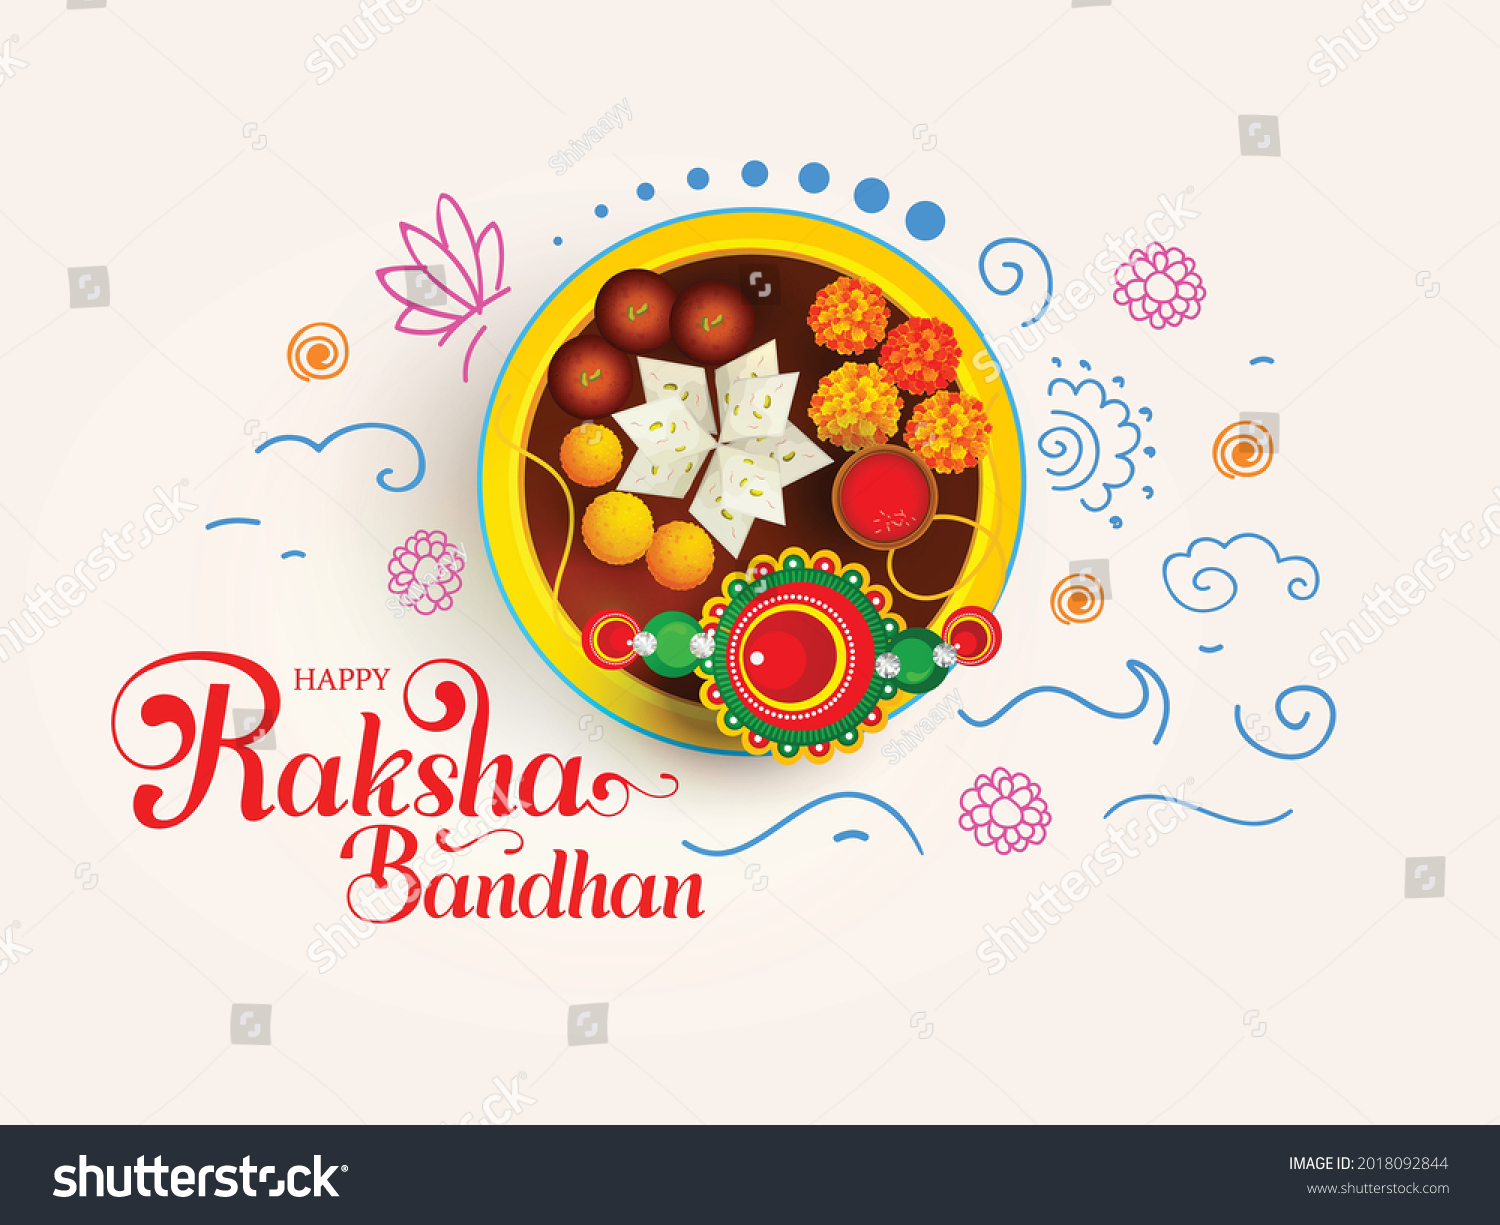 SVG of Beautiful Rakhi Traditional Background Design with Doodle Decoration for Raksha Bandhan Festival. svg